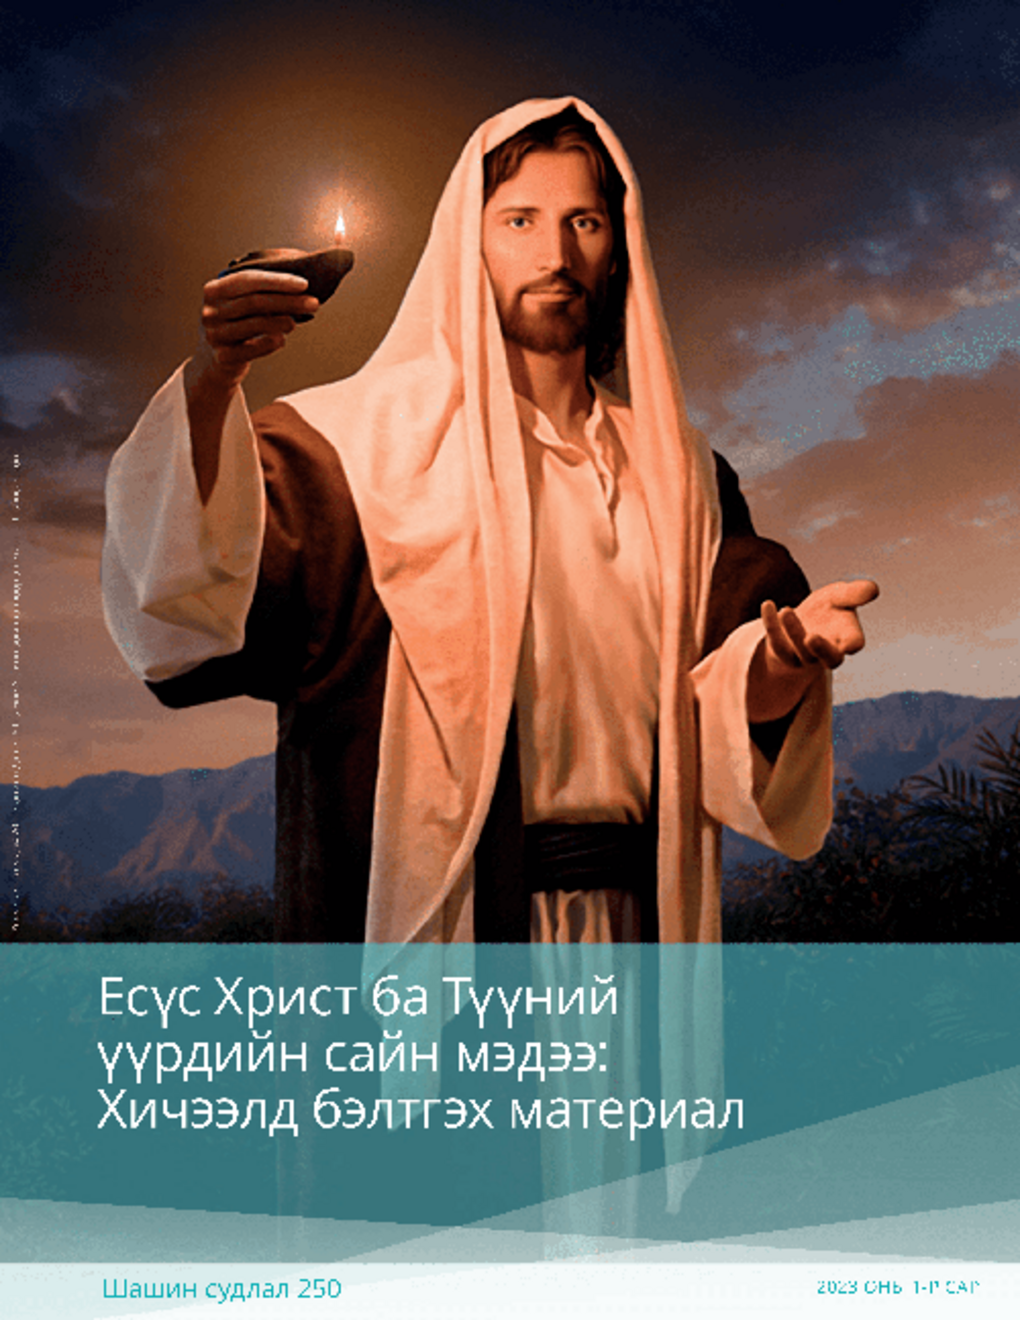 Есүс Христ ба Түүний үүрдийн сайн мэдээ: Хичээлд бэлтгэх материал (Шашин судлал 250)